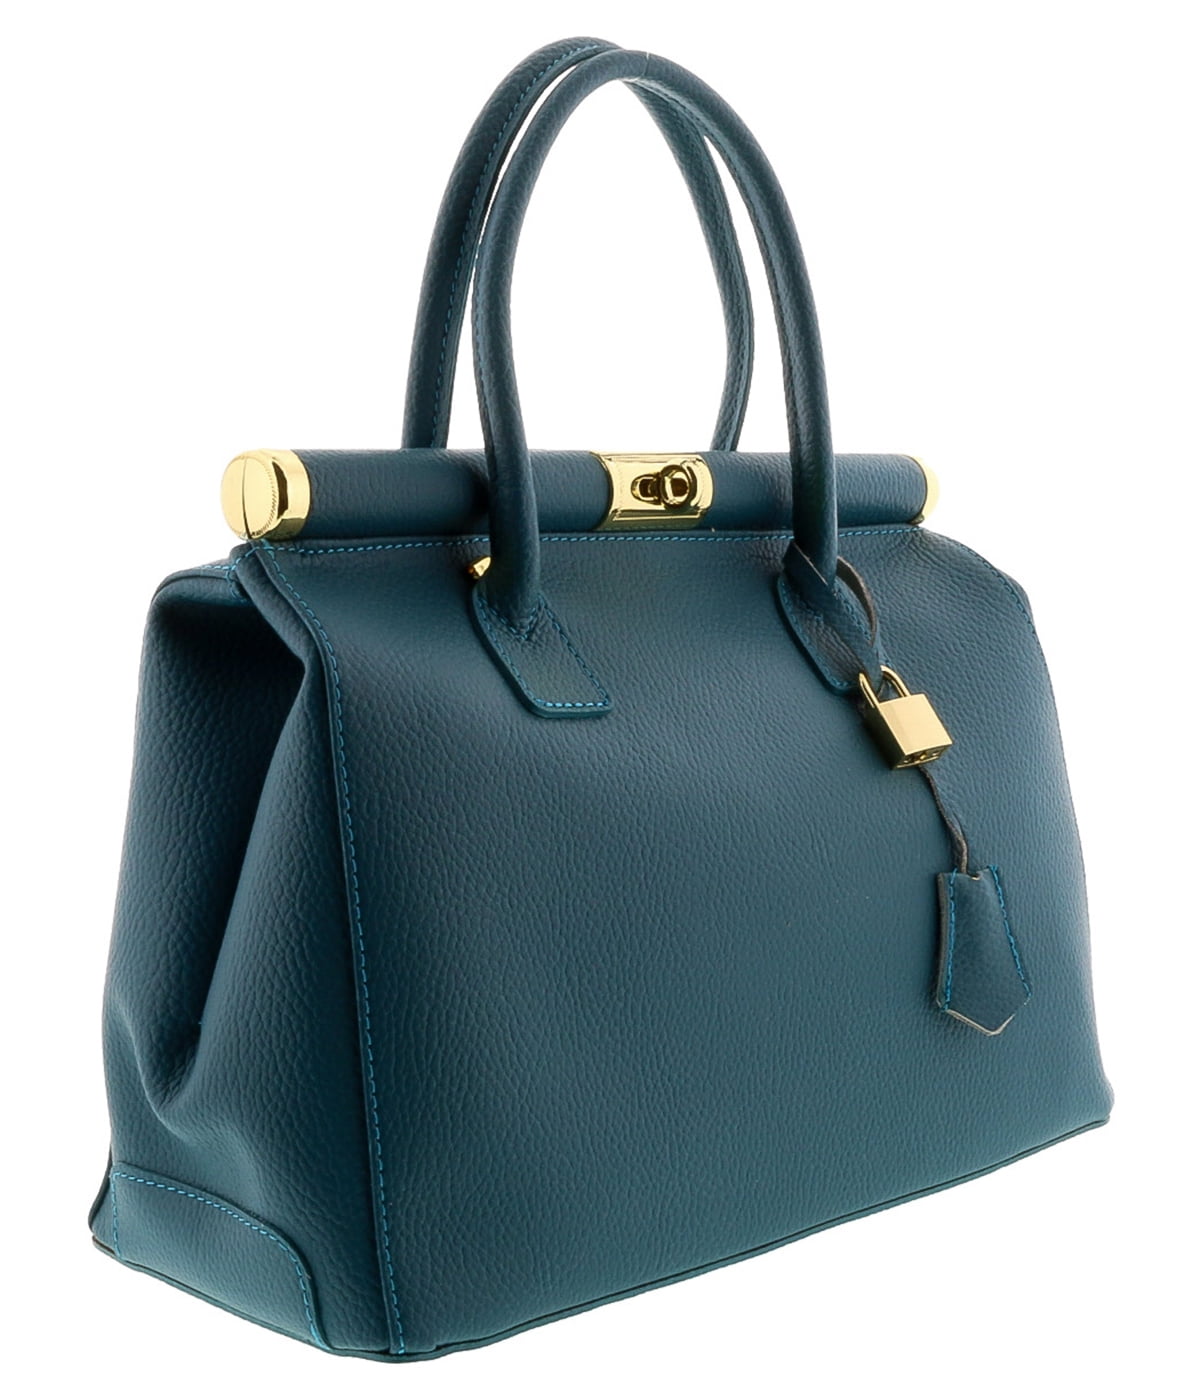 Hs Collection - HS8005 TL MINERVA Teal Leather Satchel/Shoulder Bag ...